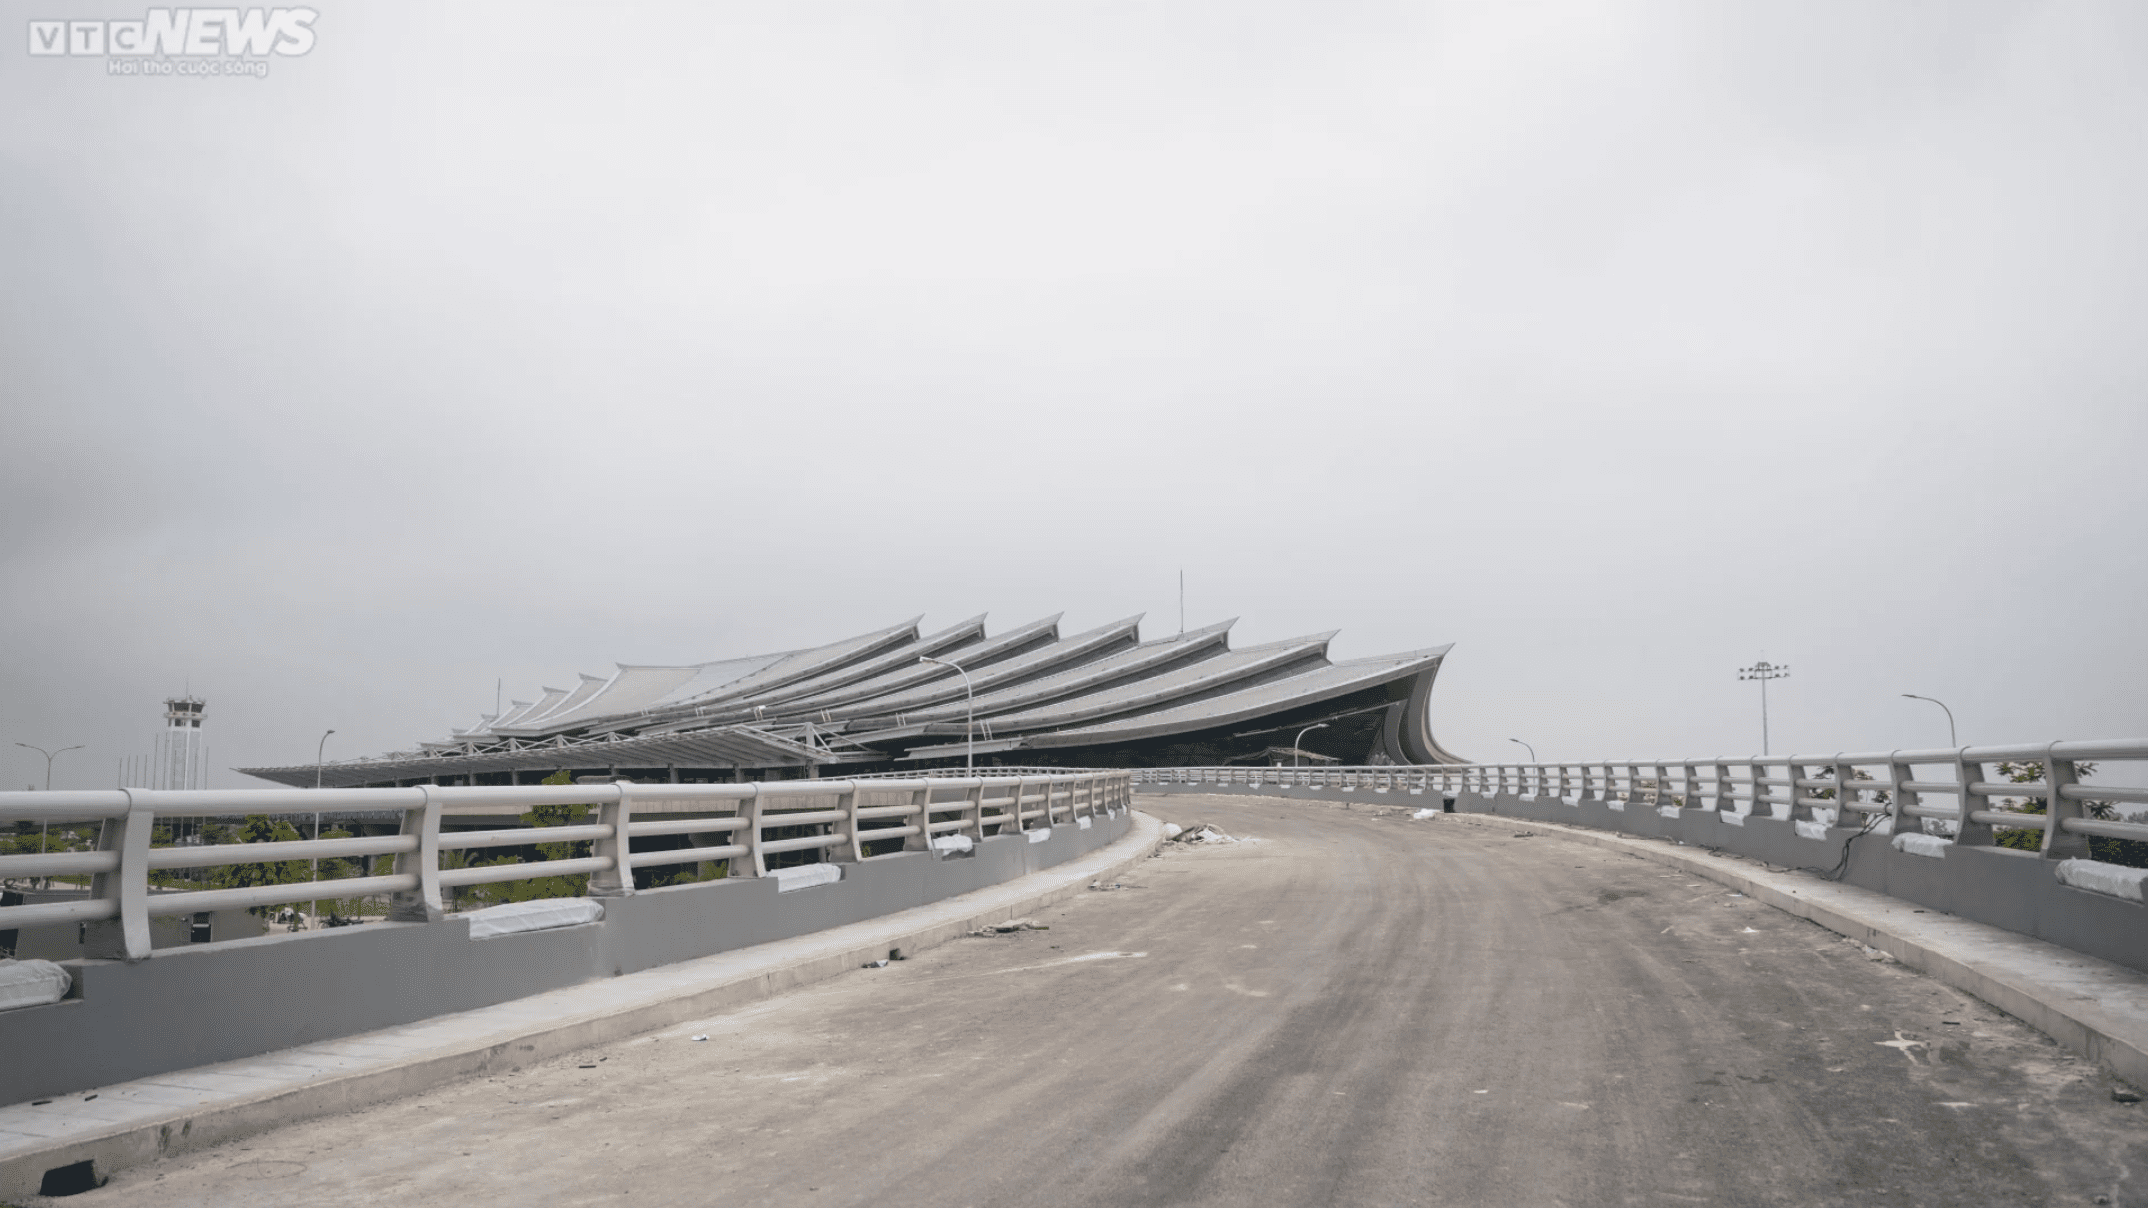 Điểm nhấn của nhà ga T2 Cảng Hàng không Quốc tế Phú Bài đó là được xây dựng theo phong cách kiến trúc cung đình Huế với các lớp mái chồng xếp lên nhau, thể hiện khát vọng vươn lên.